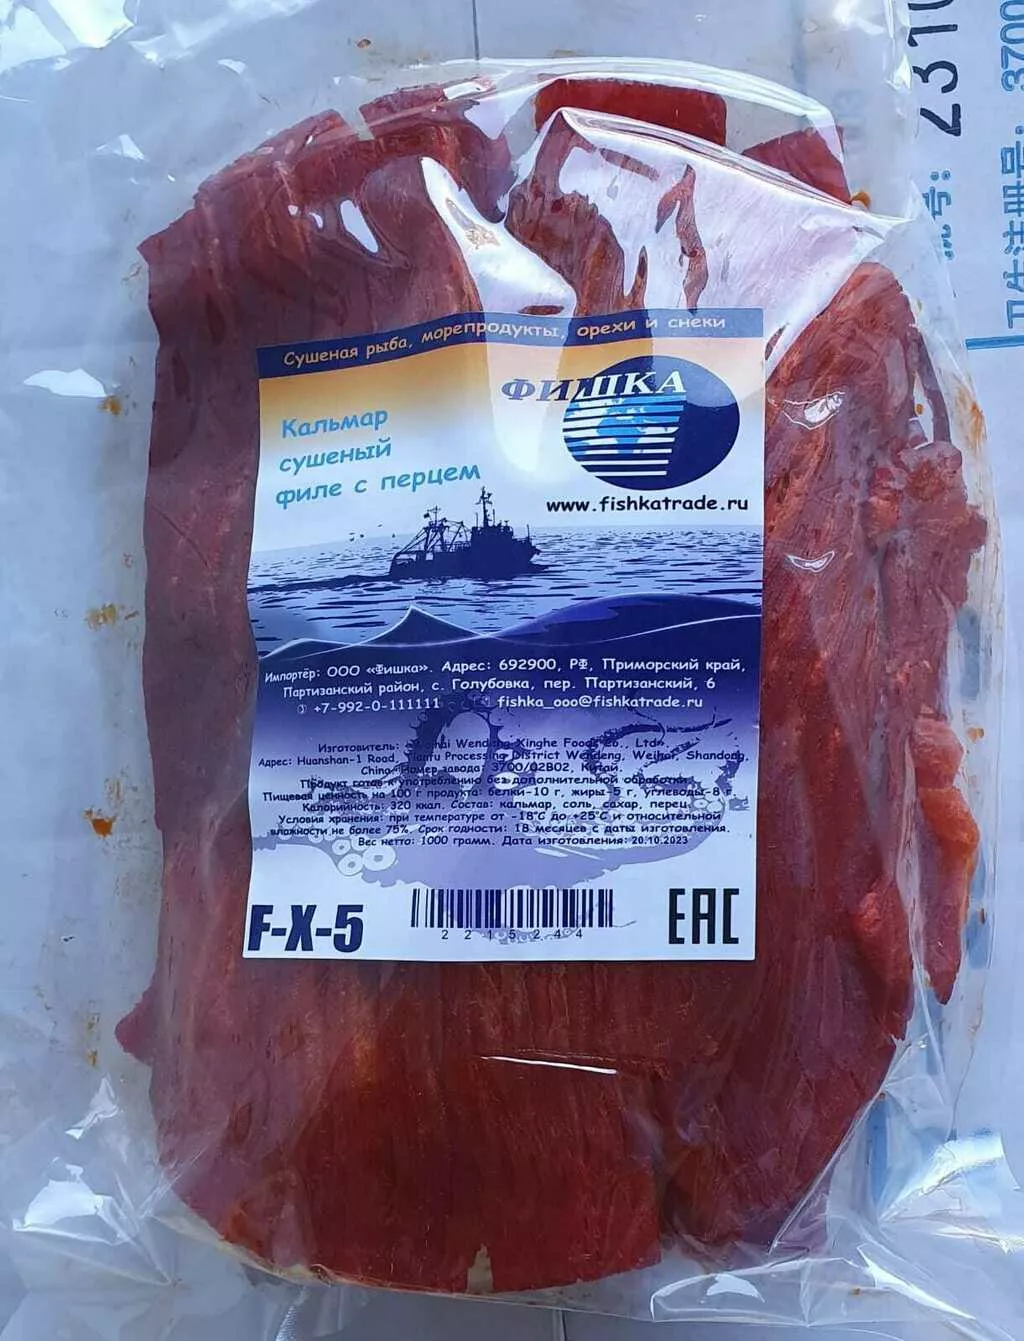 осьминог солено-сушеный (пяточки)  в Владивостоке 2